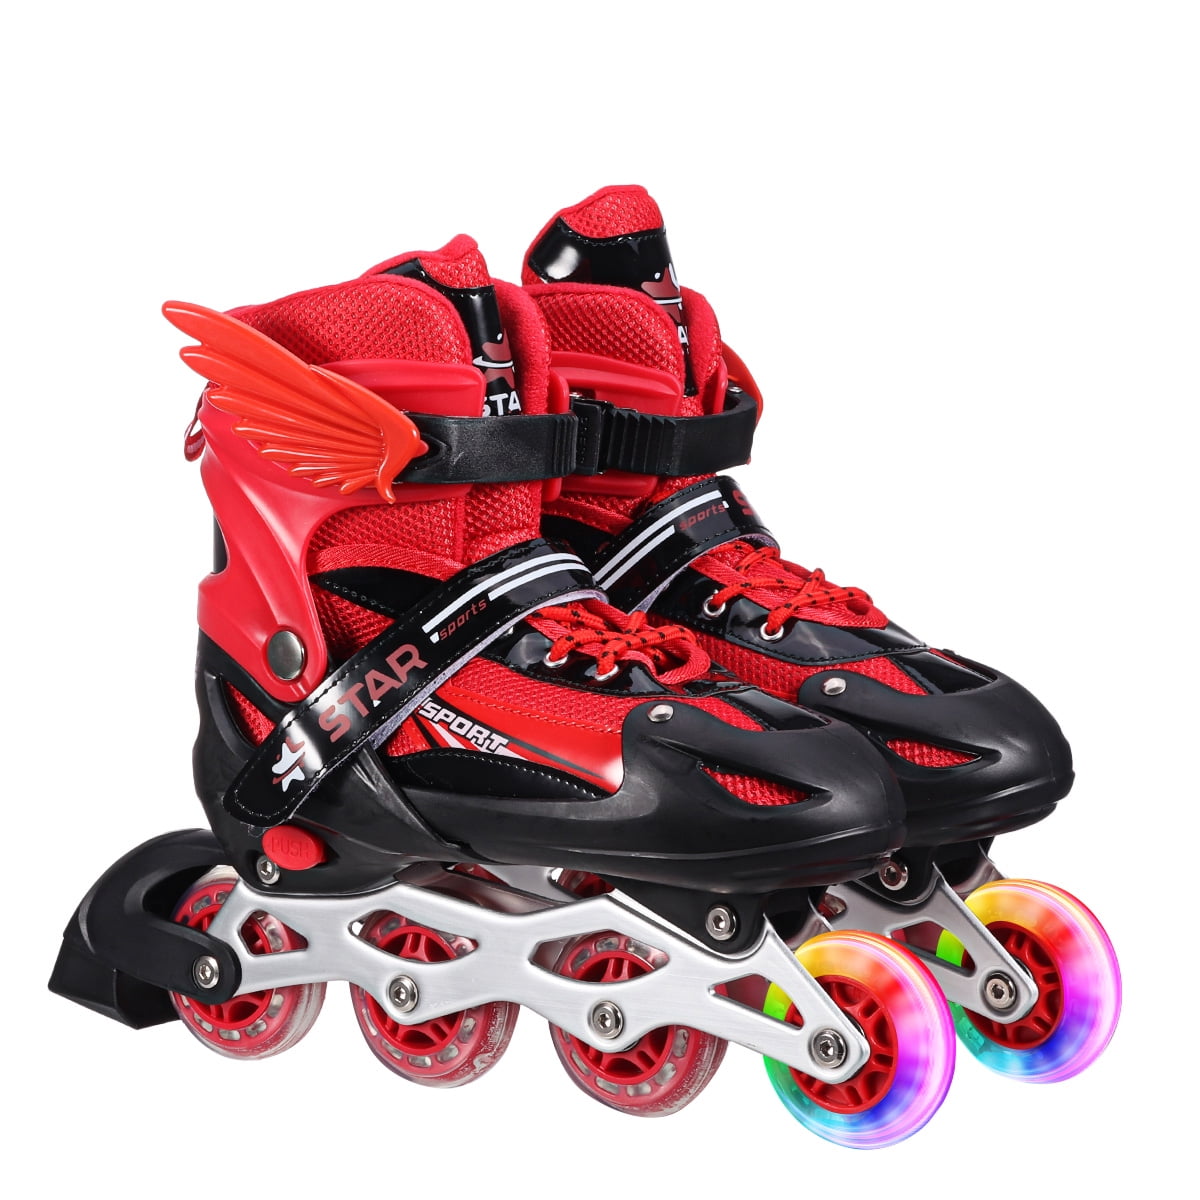 Details about   Kids Adjustable Inline Skates Blades for Toddler Boys Girls Mesh Breathable 